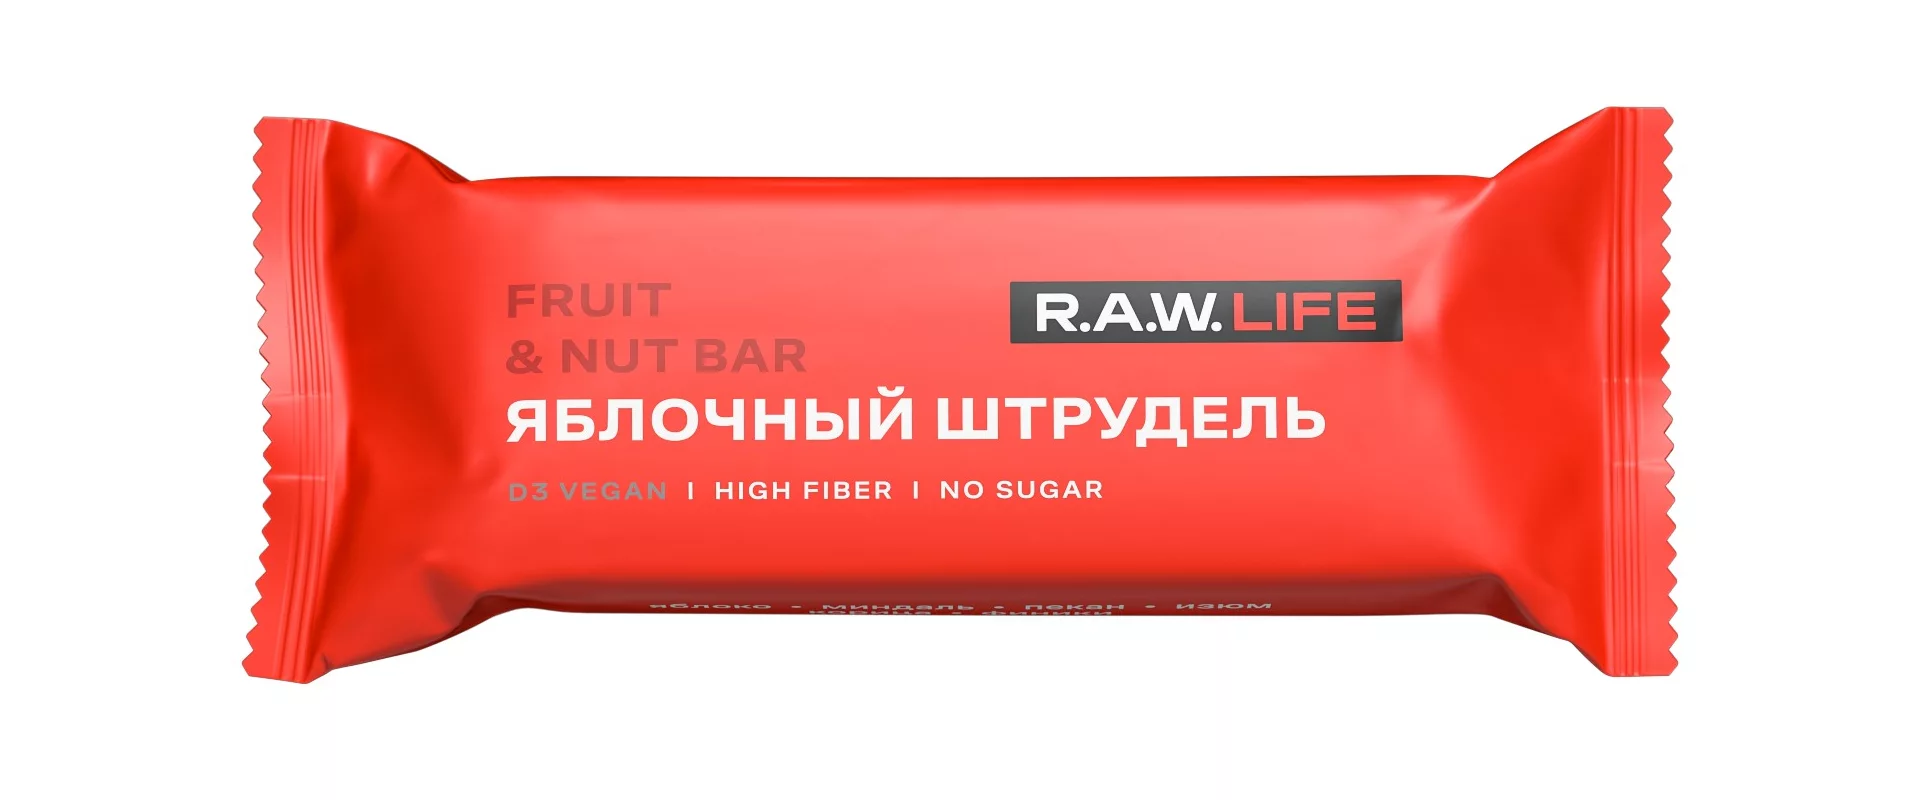 R.A.W. Life Яблочный Штрудель 47g/ Энергетический батончик